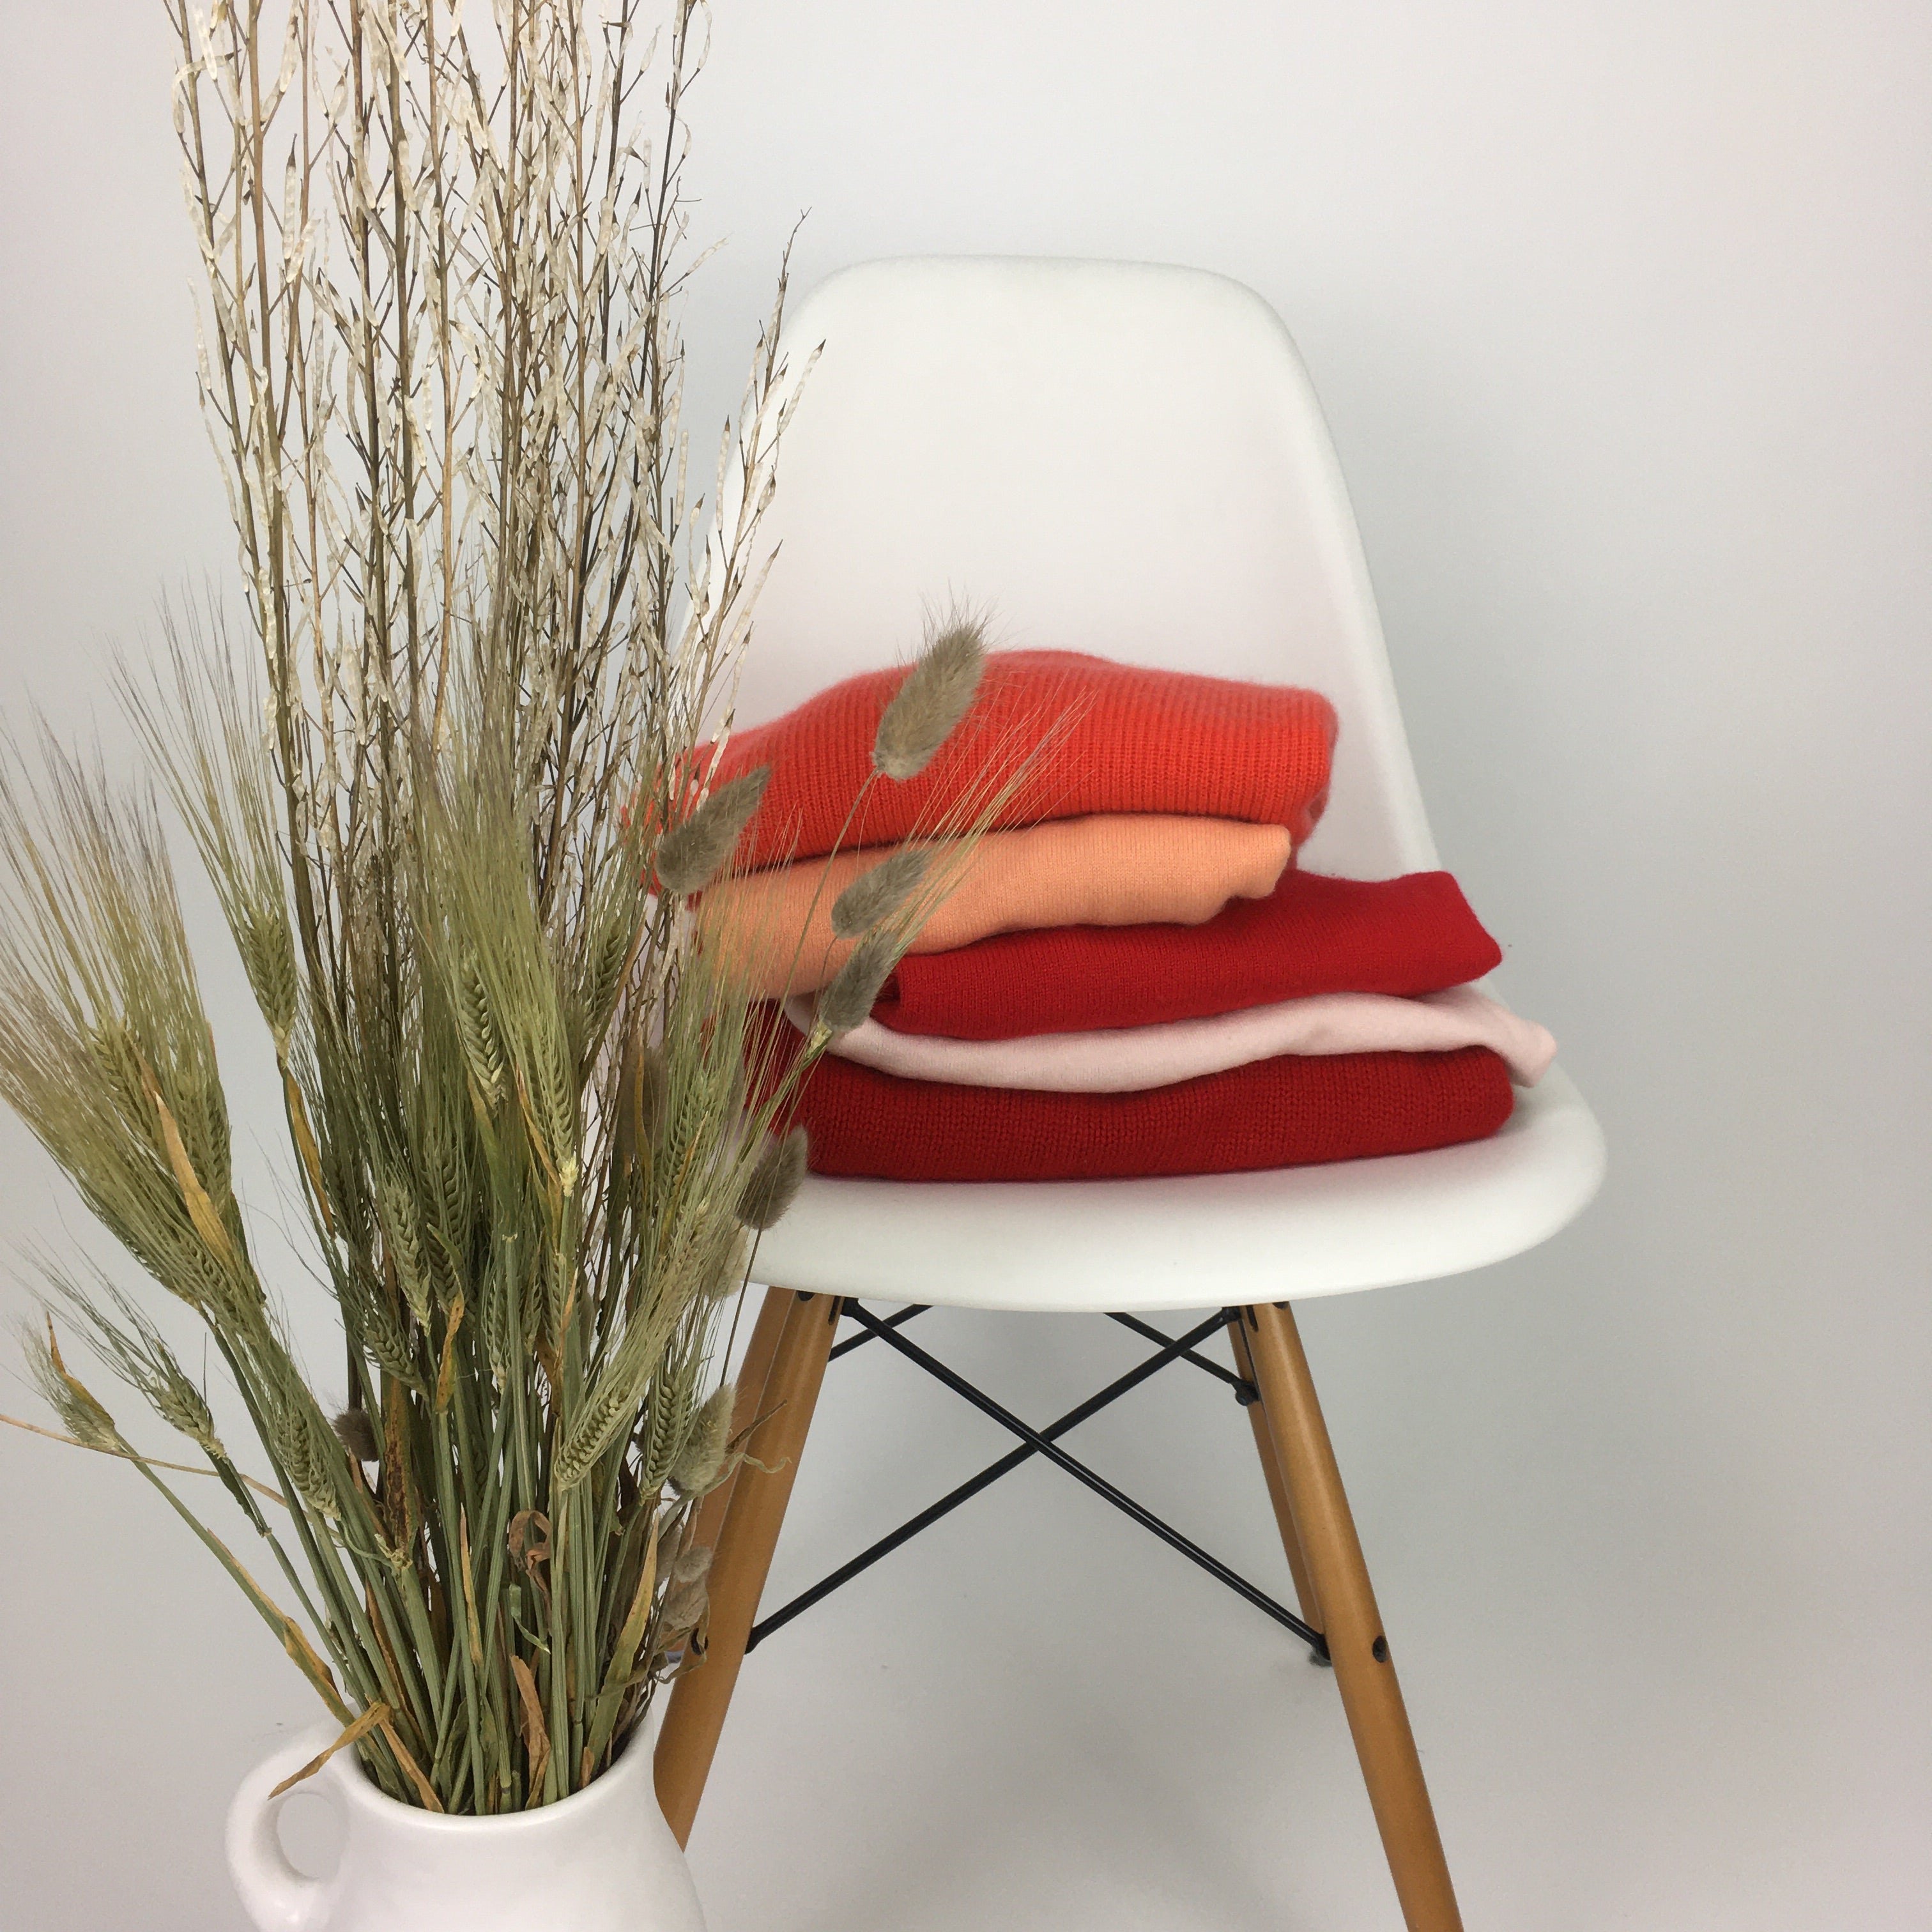 Pullover gefaltet auf einem Eames Chair